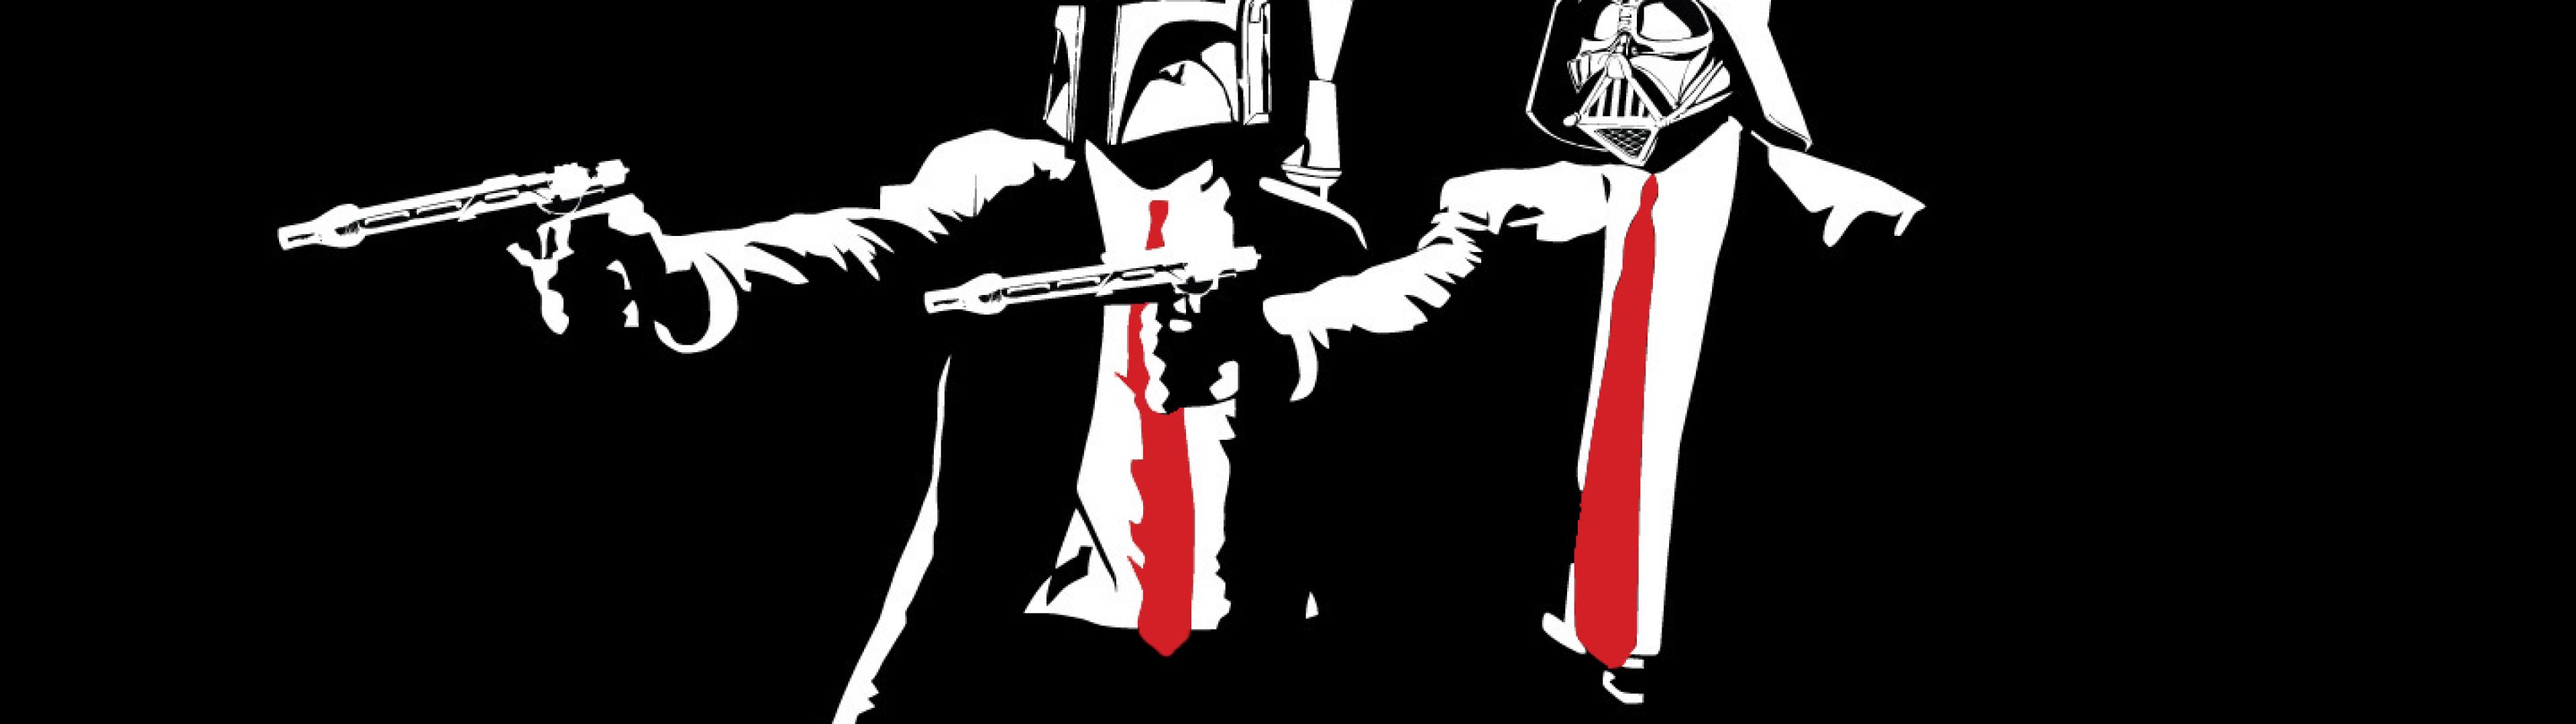 Star Wars Pulp Fiction Darth Vader Boba Fett HD Wallpaper Of Movies